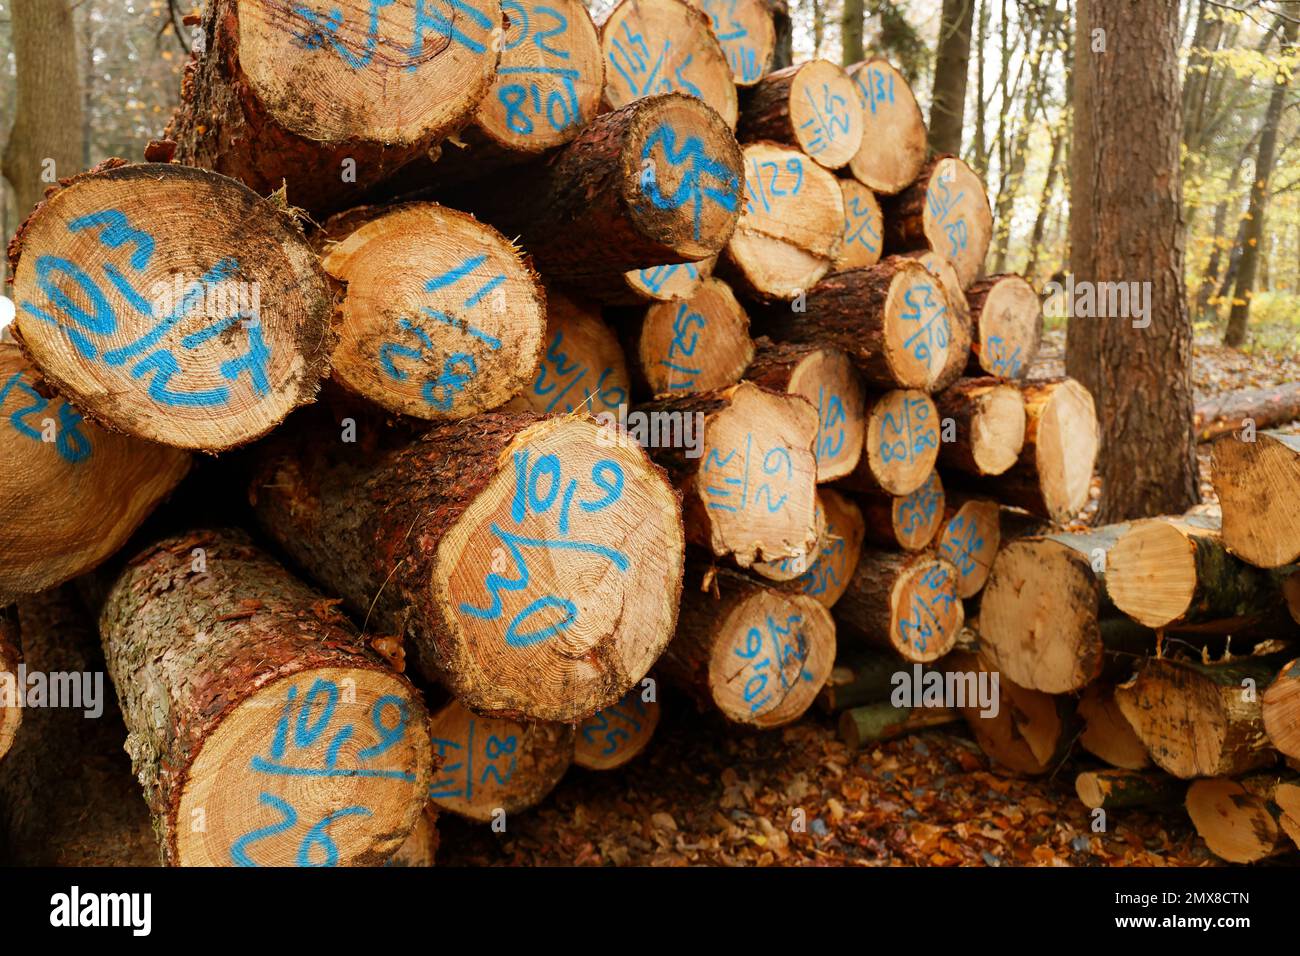 Arbres abattus empilés dans la forêt. Coupe transversale de troncs d'arbre, arrière-plan en bois. Bois de sciage industrie du bois Banque D'Images